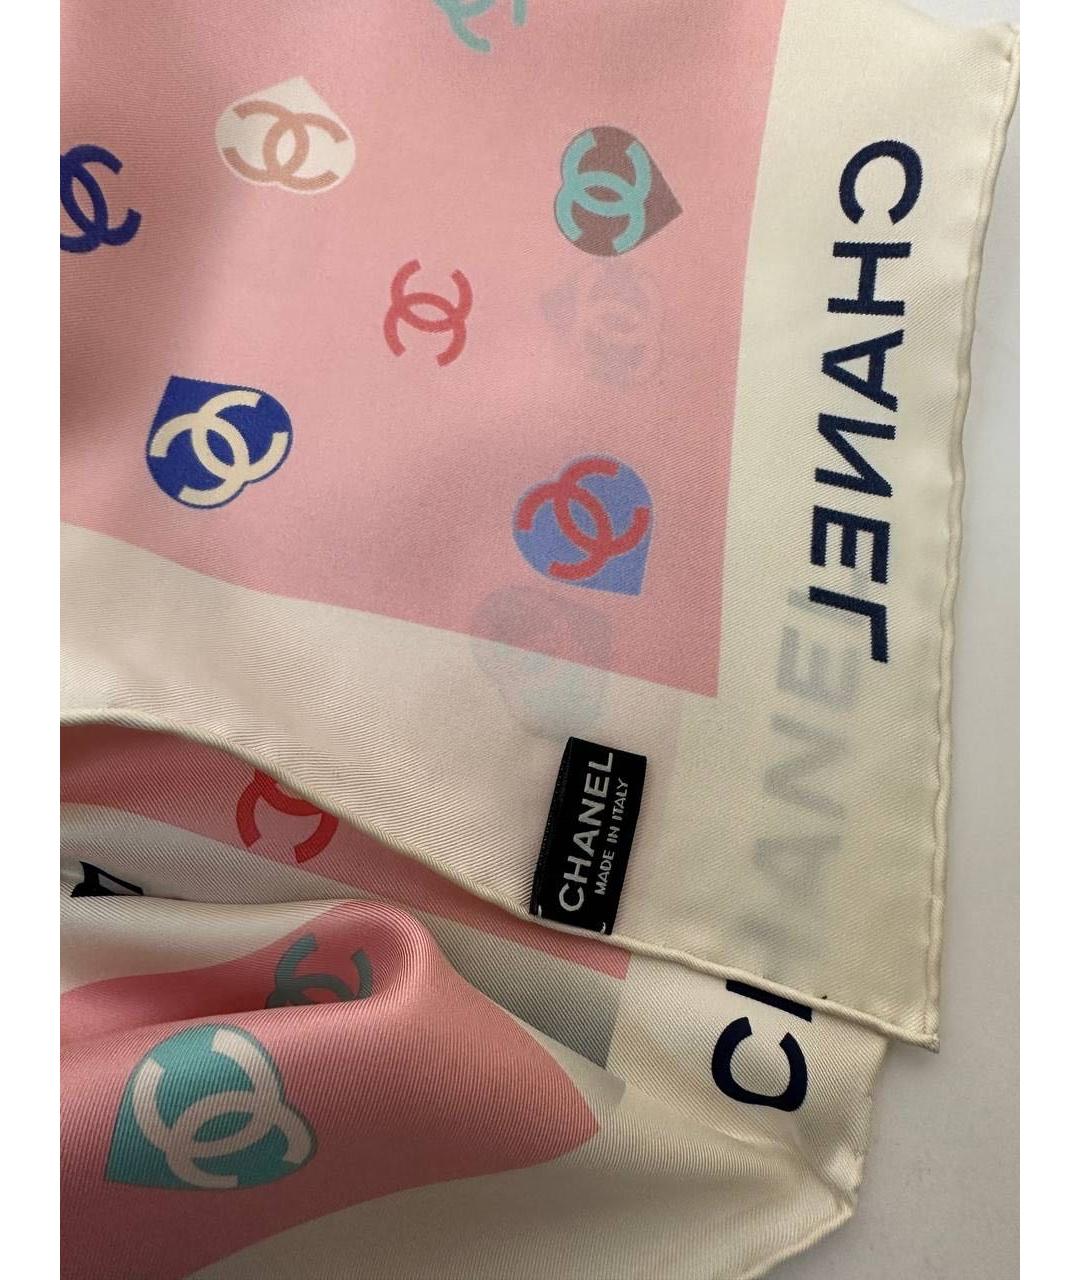 CHANEL Розовый шелковый платок, фото 3